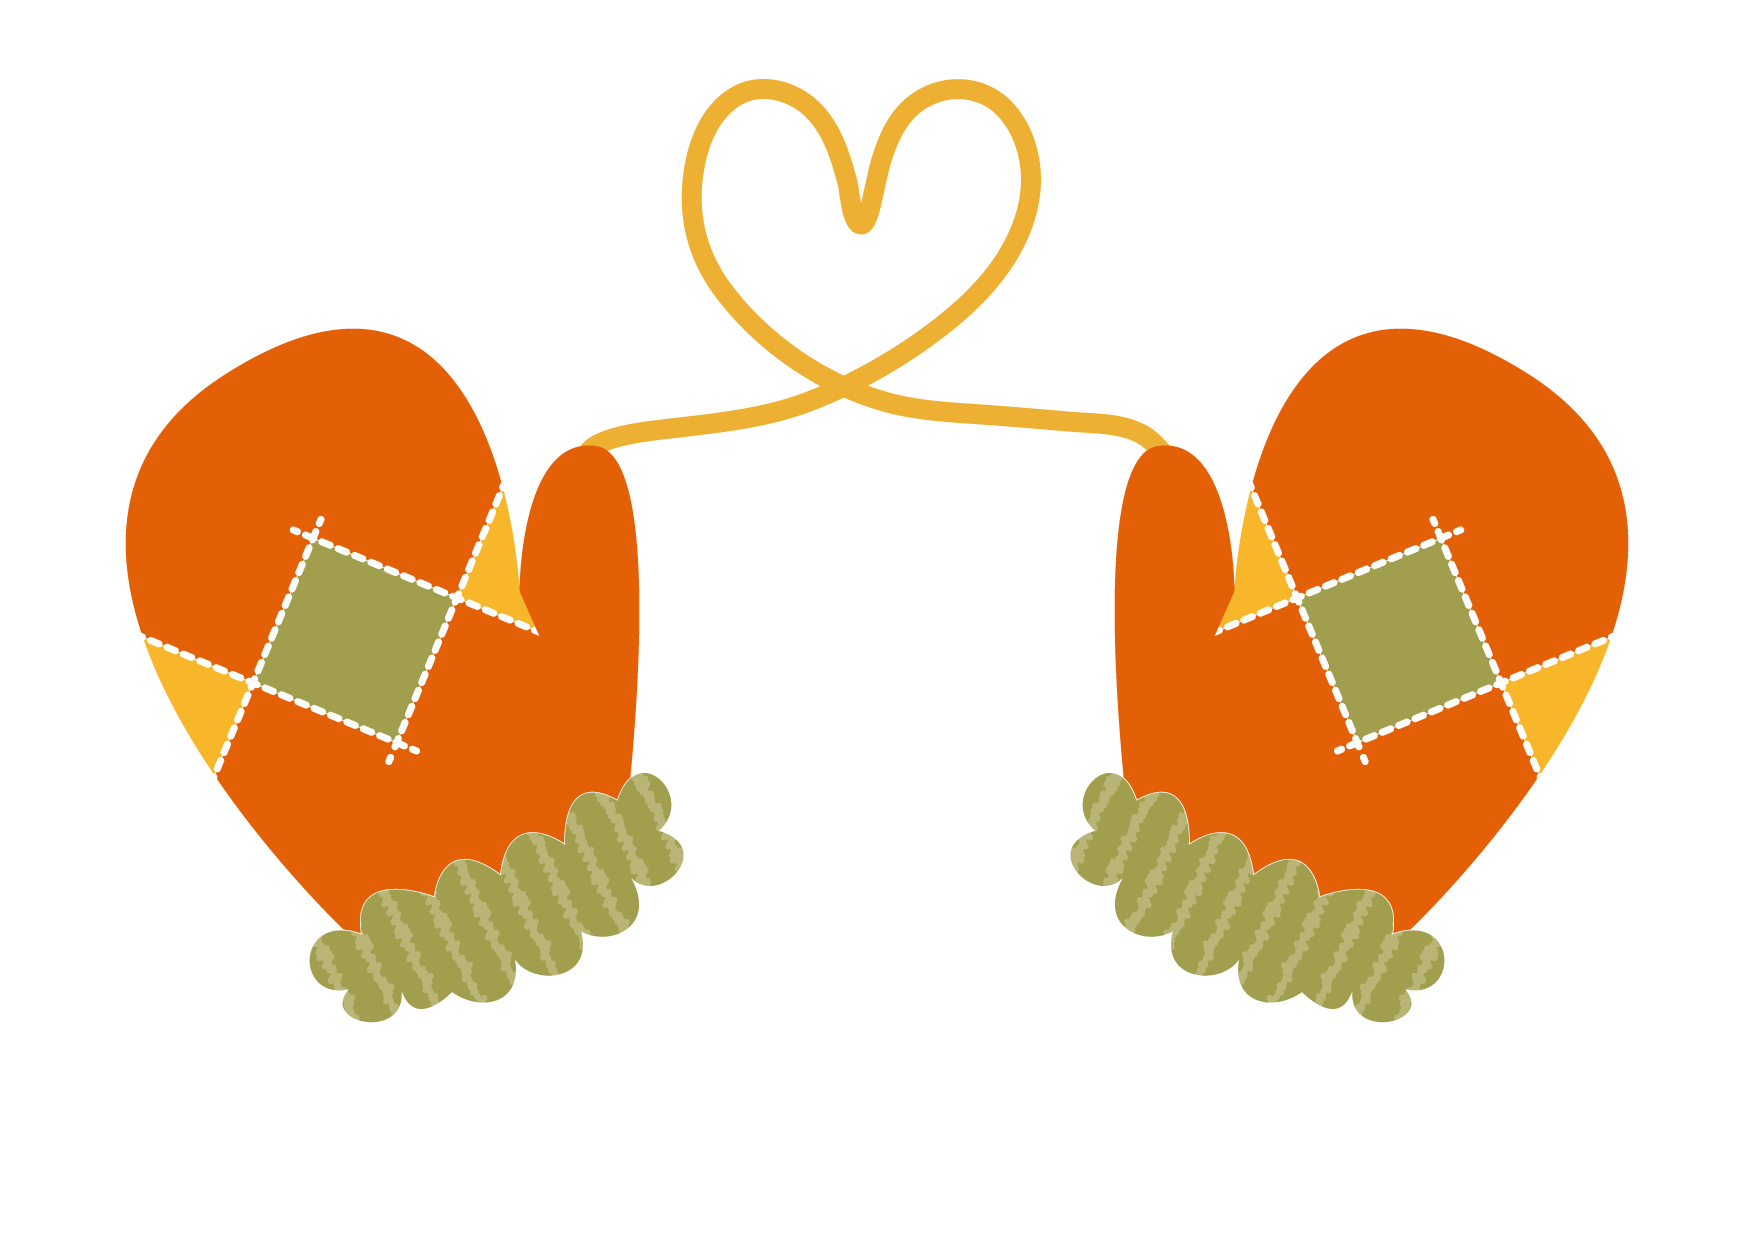 可愛いイラスト無料 手袋 ハート オレンジ色 Free Illustration Gloves Heart Orange 公式 イラスト 素材サイト イラストダウンロード